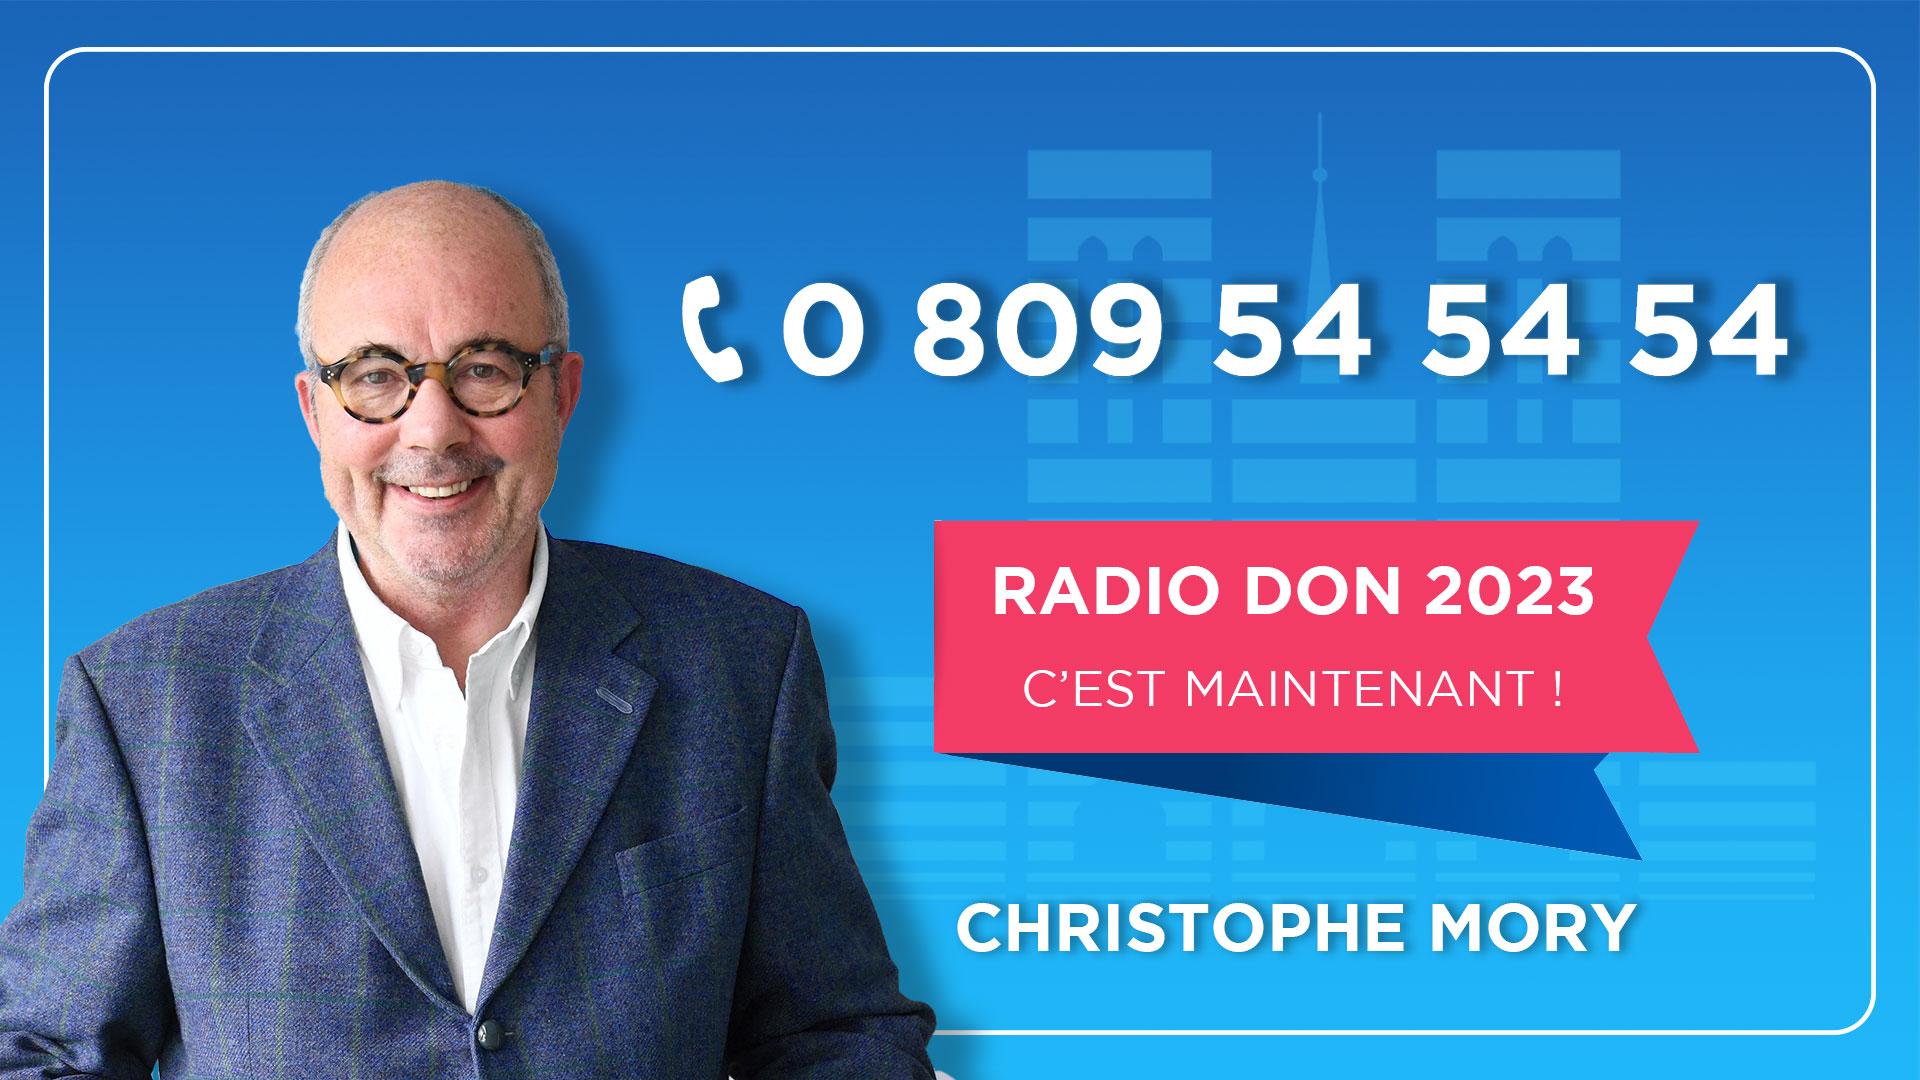 Radio Don - Christophe Mory